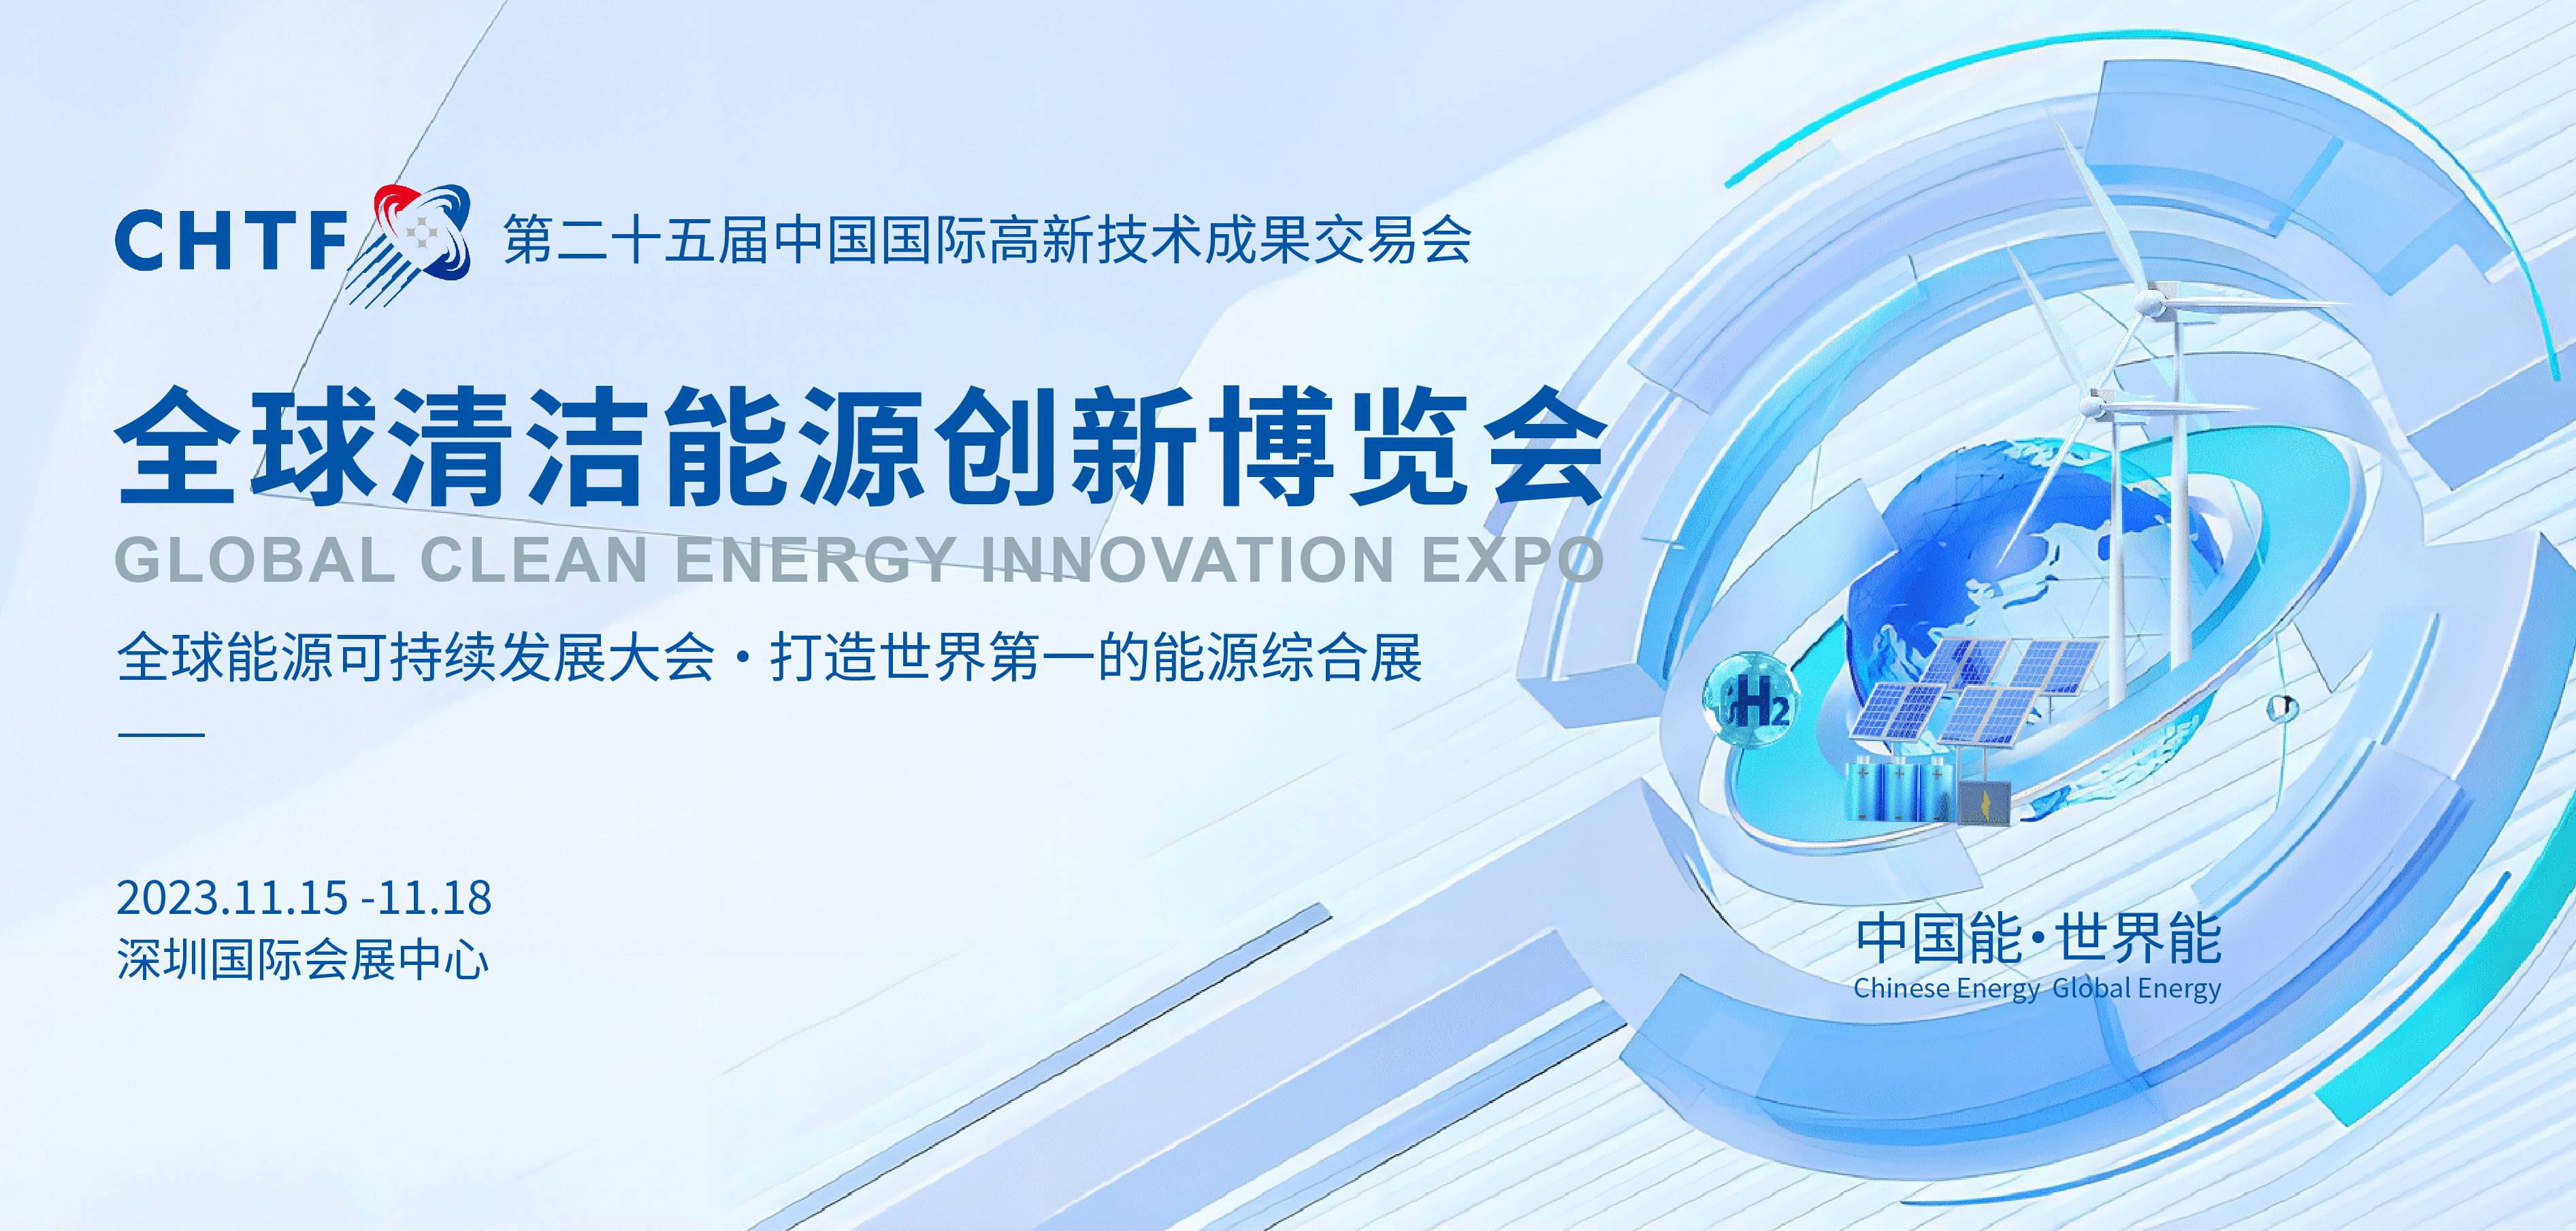 智慧储能领导者|重庆中科超容科技有限公司亮相高交会-全球清洁能源创新博览会